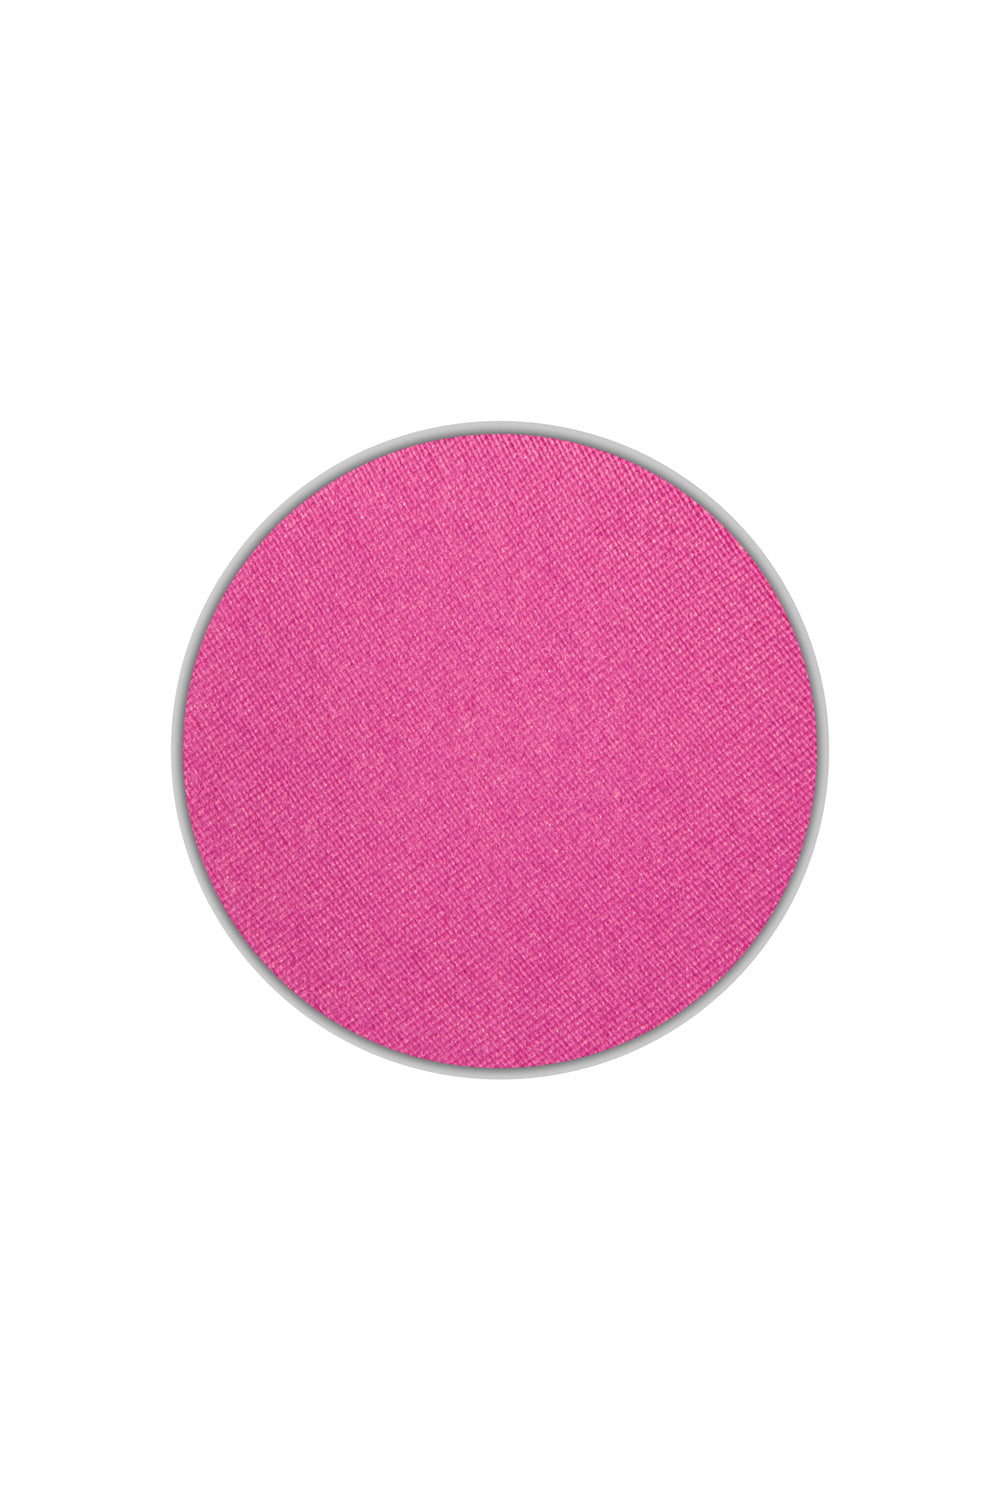 Raspberry Sorbet - Type 4 Eyeshadow Pan